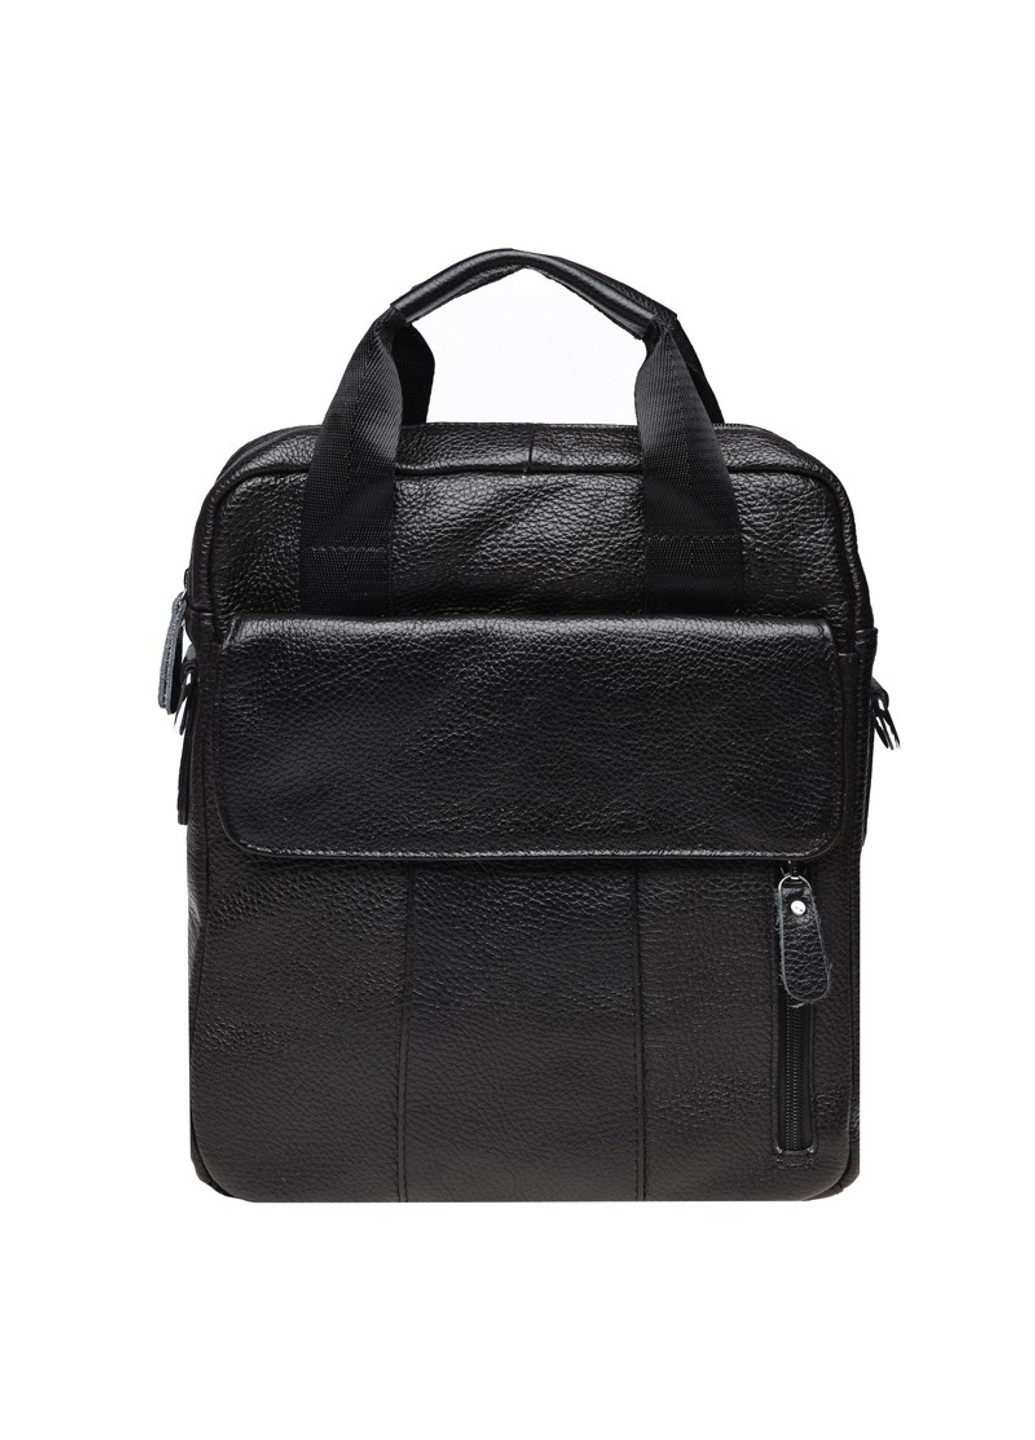 Мужская кожаная сумка K18863-black Borsa Leather (271664994)